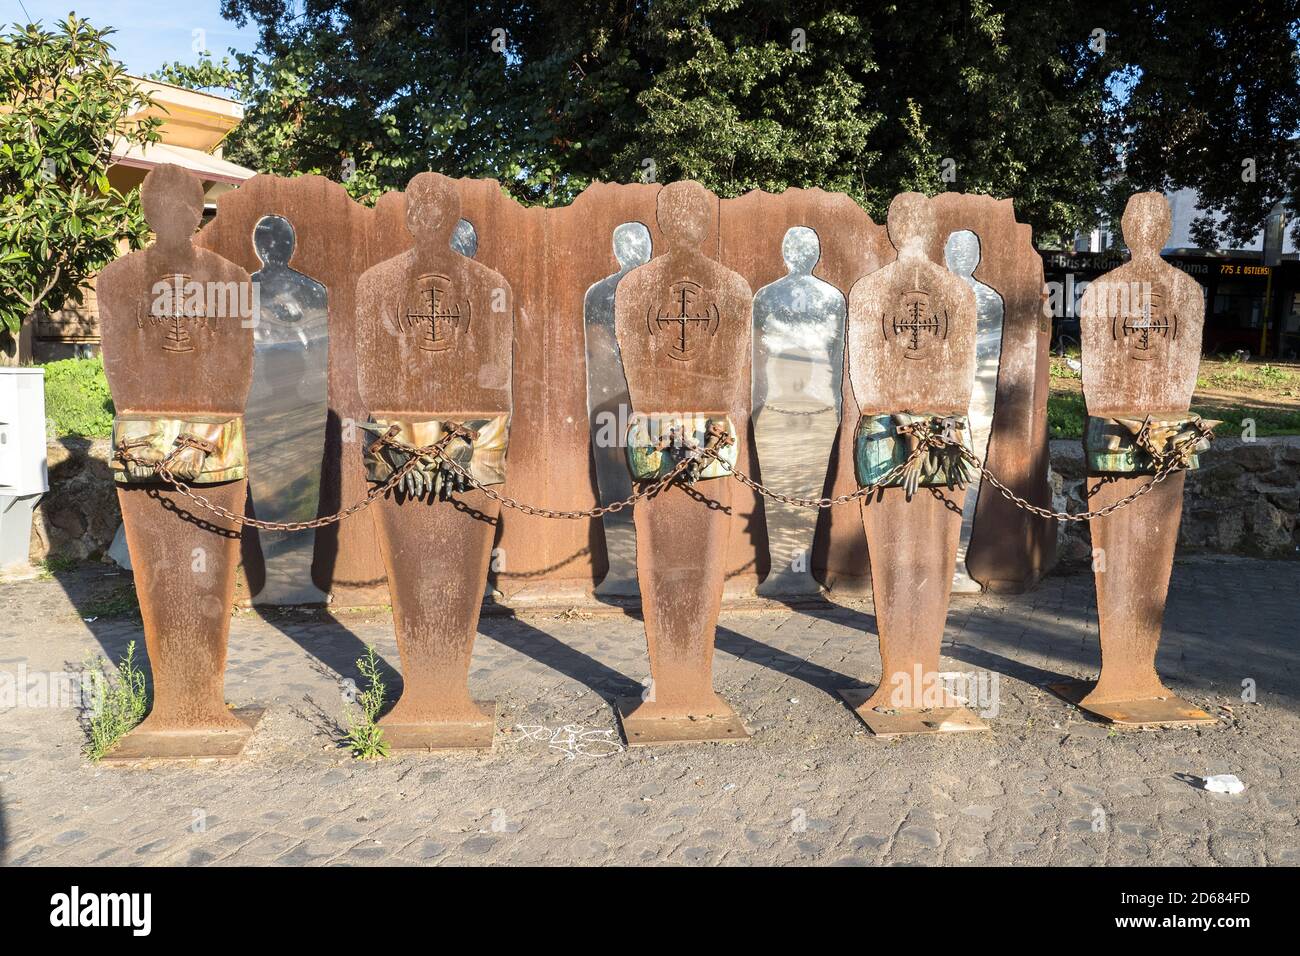 Monumento antifascista 'tutti i potenziali bersagli' dedicato alle vittime del nazismo e del razzismo in piazzale Ostiense - Roma, Italia Foto Stock